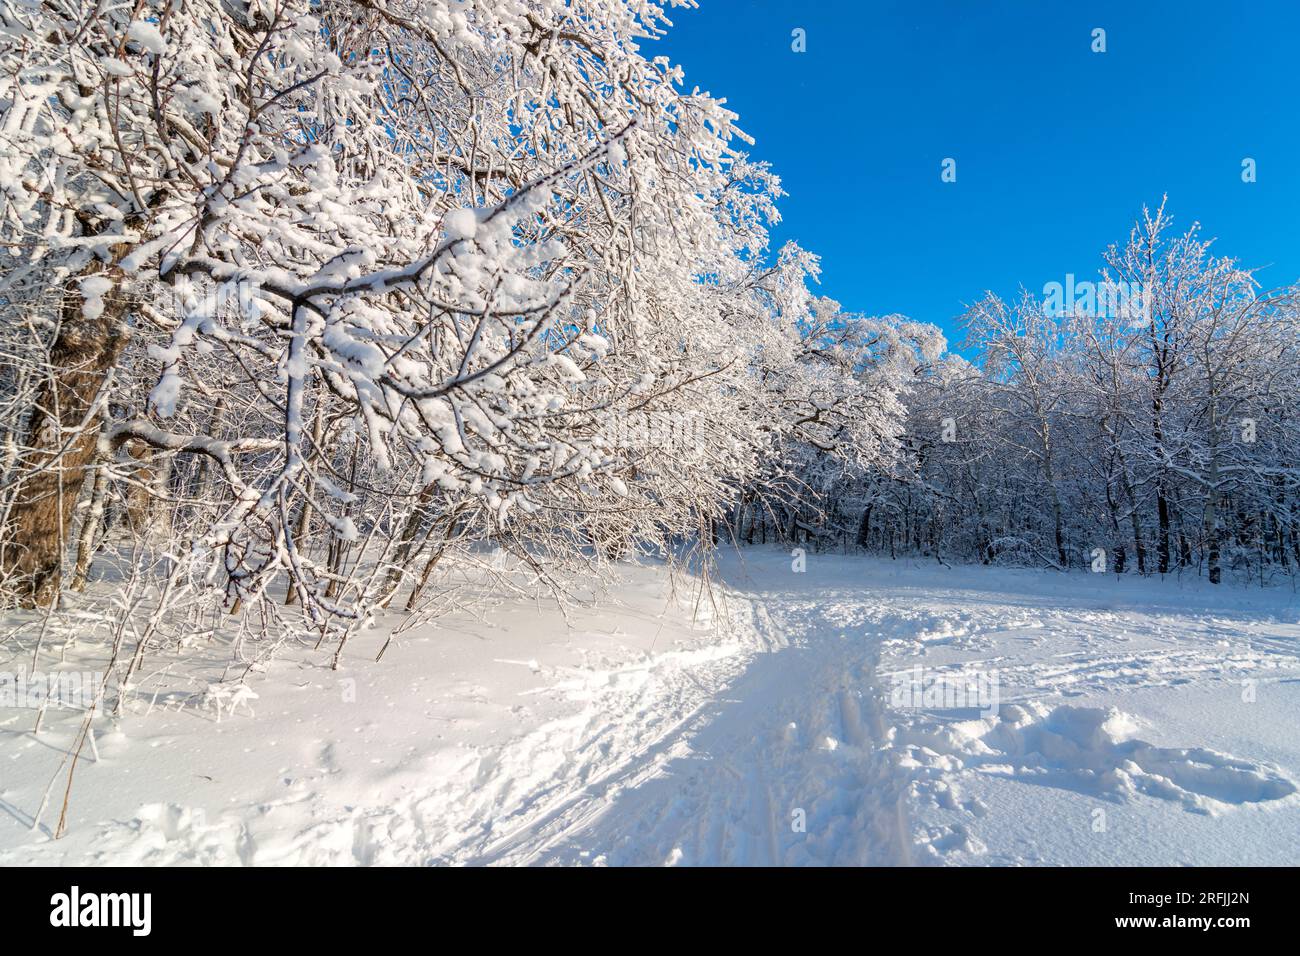 Winterski im verschneiten Wald im Hintergrund. Schneebedeckte Eichenbäume mit Winterwaldlandschaft. Frostiger Tag, ruhige winterliche Szene. Skigebiet. Ein tolles Bild von der wilden Gegend Stockfoto